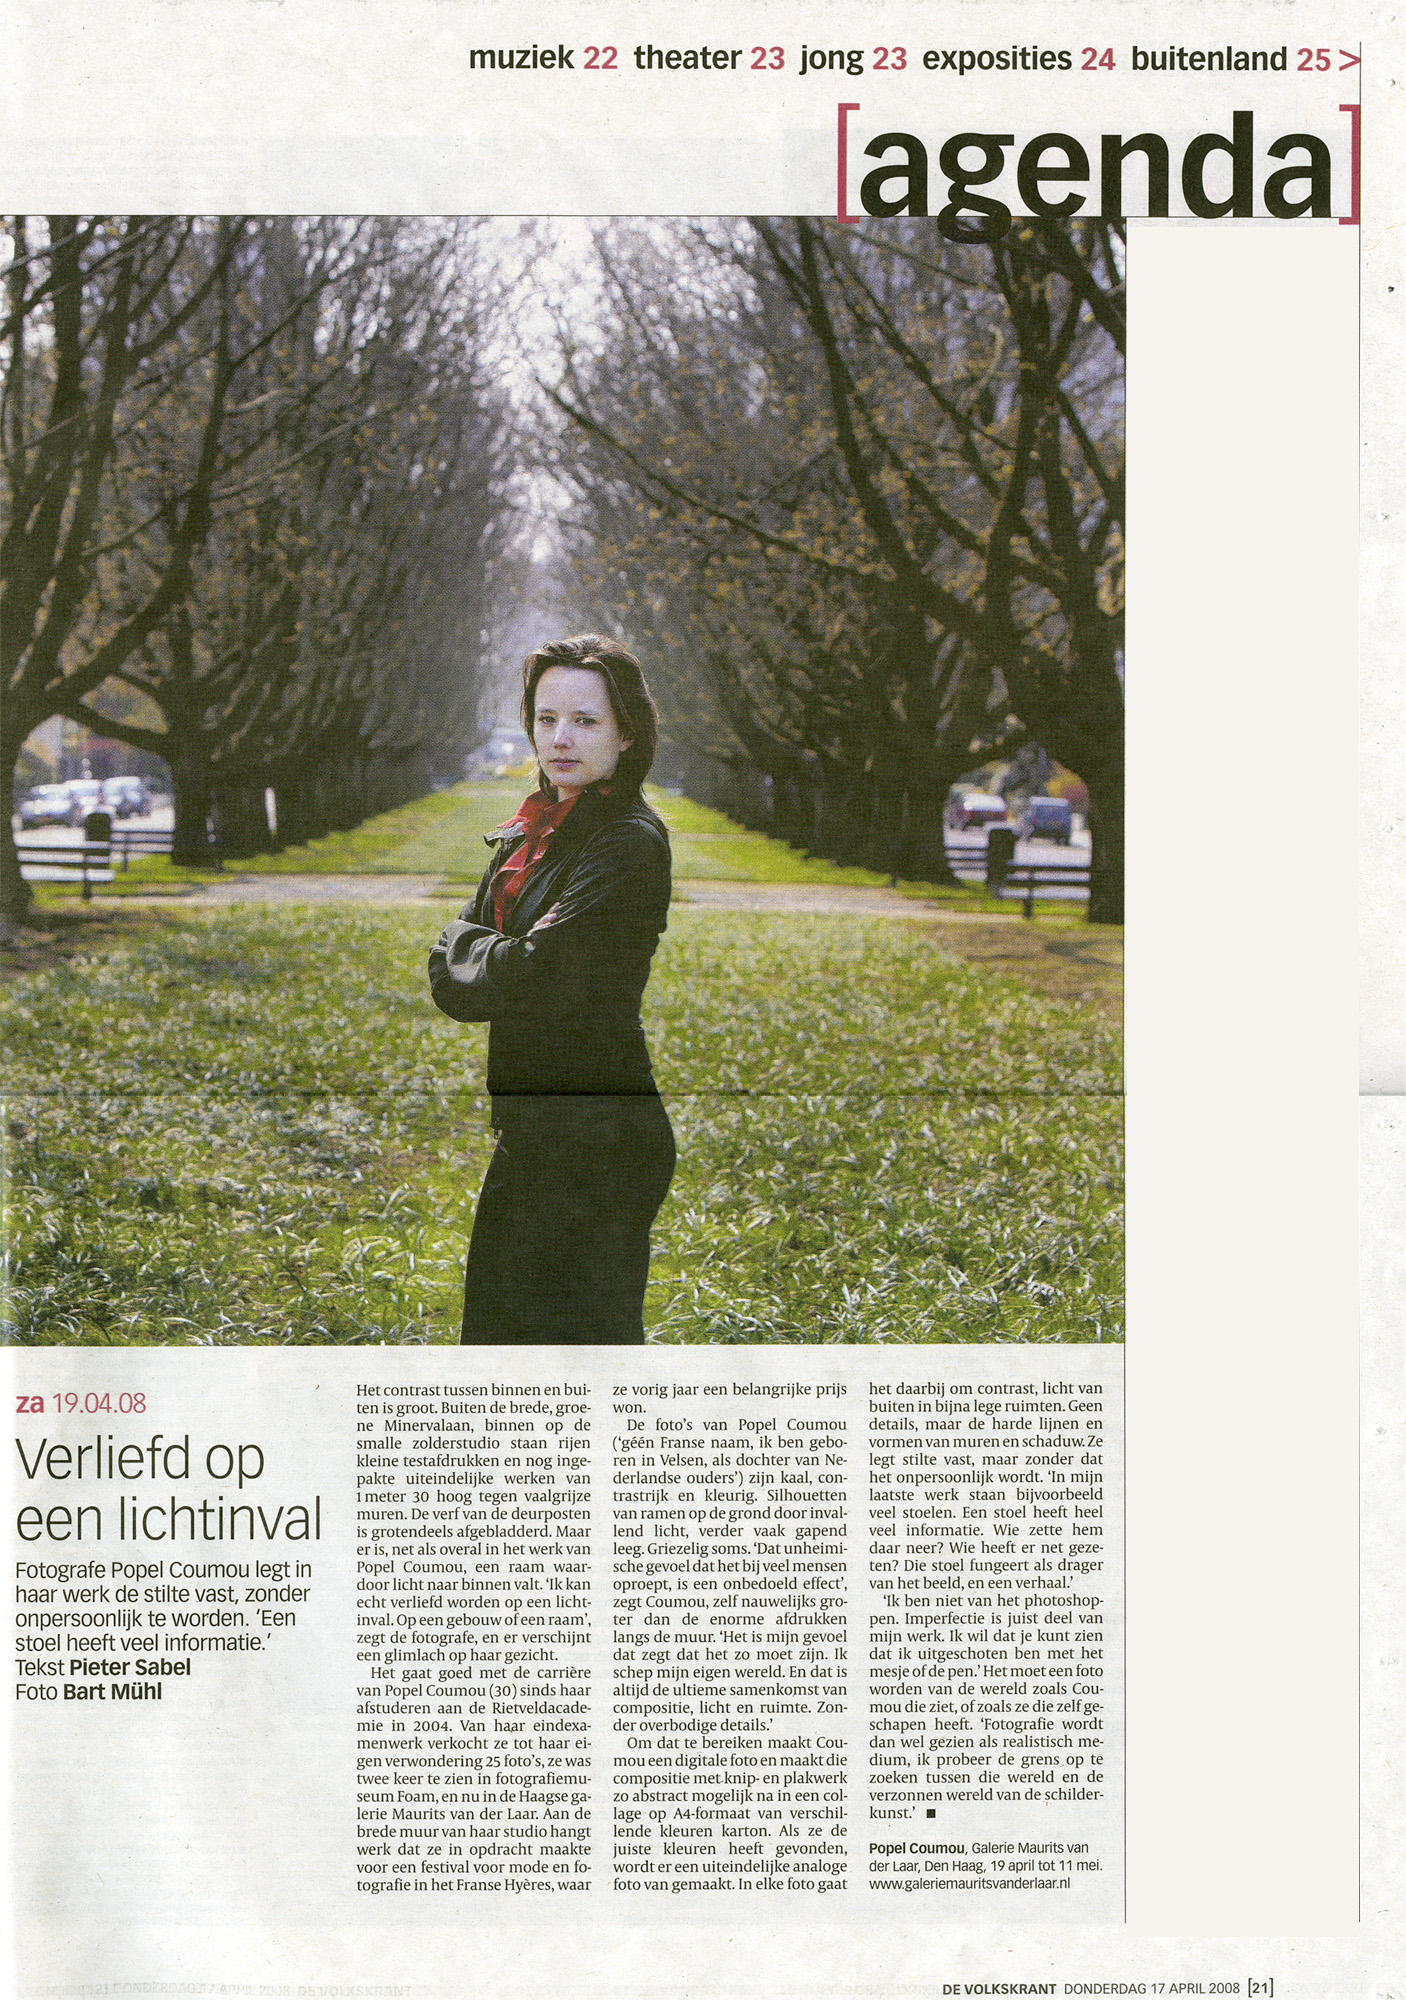 De Volkskrant 24/02/2008 By Pieter Sabel